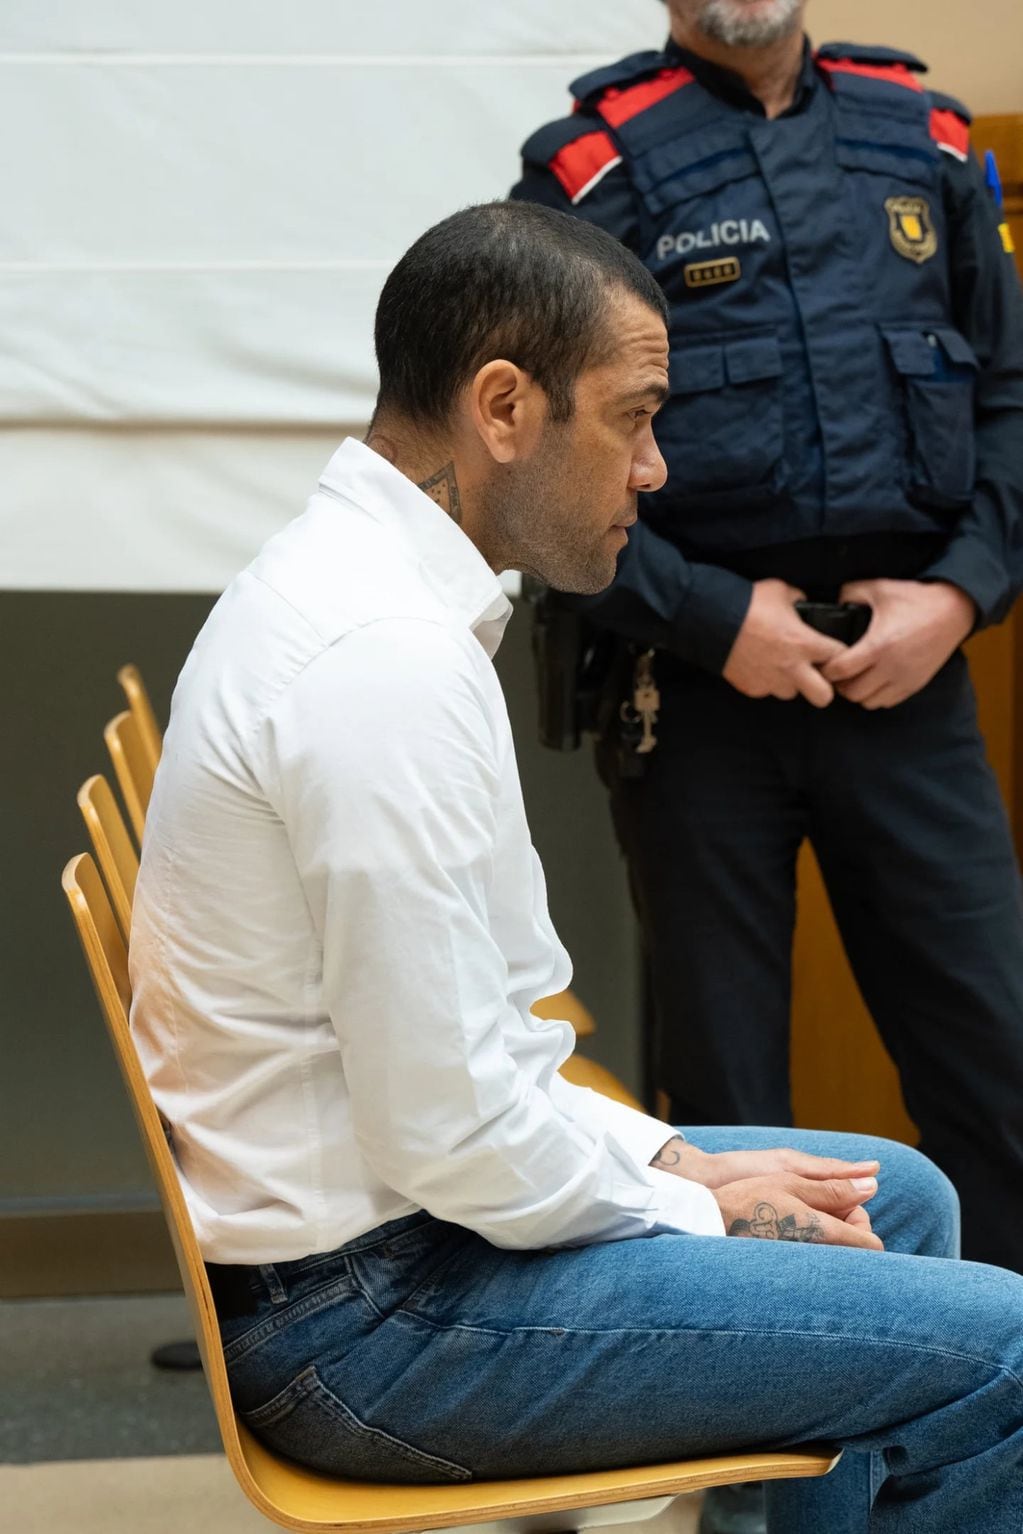 Arriesga hasta 12 años de cárcel: la llegada de Dani Alves al juicio en que lo acusan de agresión sexual